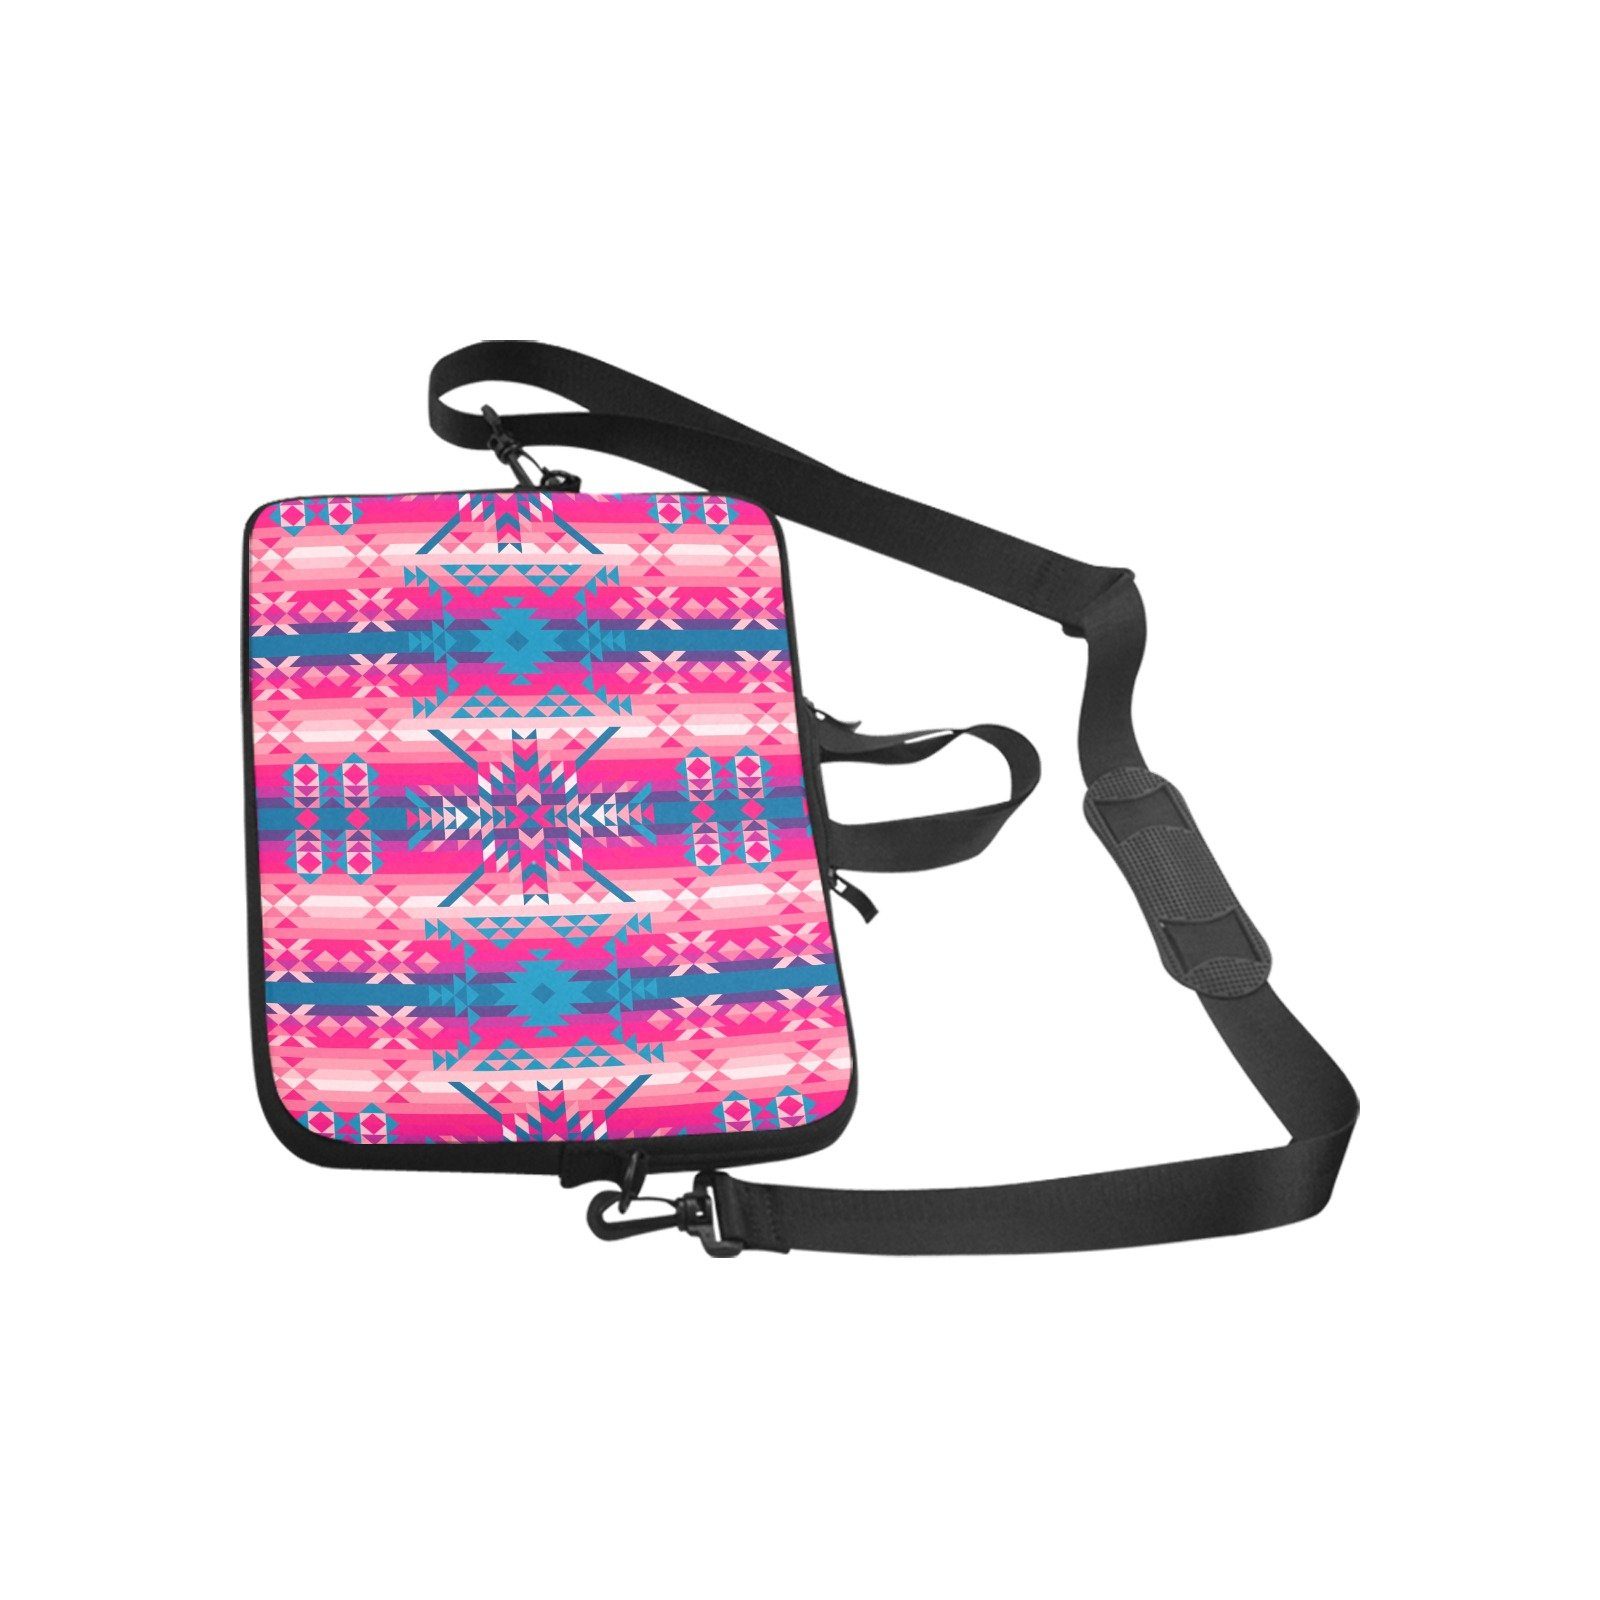 Desert Geo Blue Laptop Handbags 17" bag e-joyer 